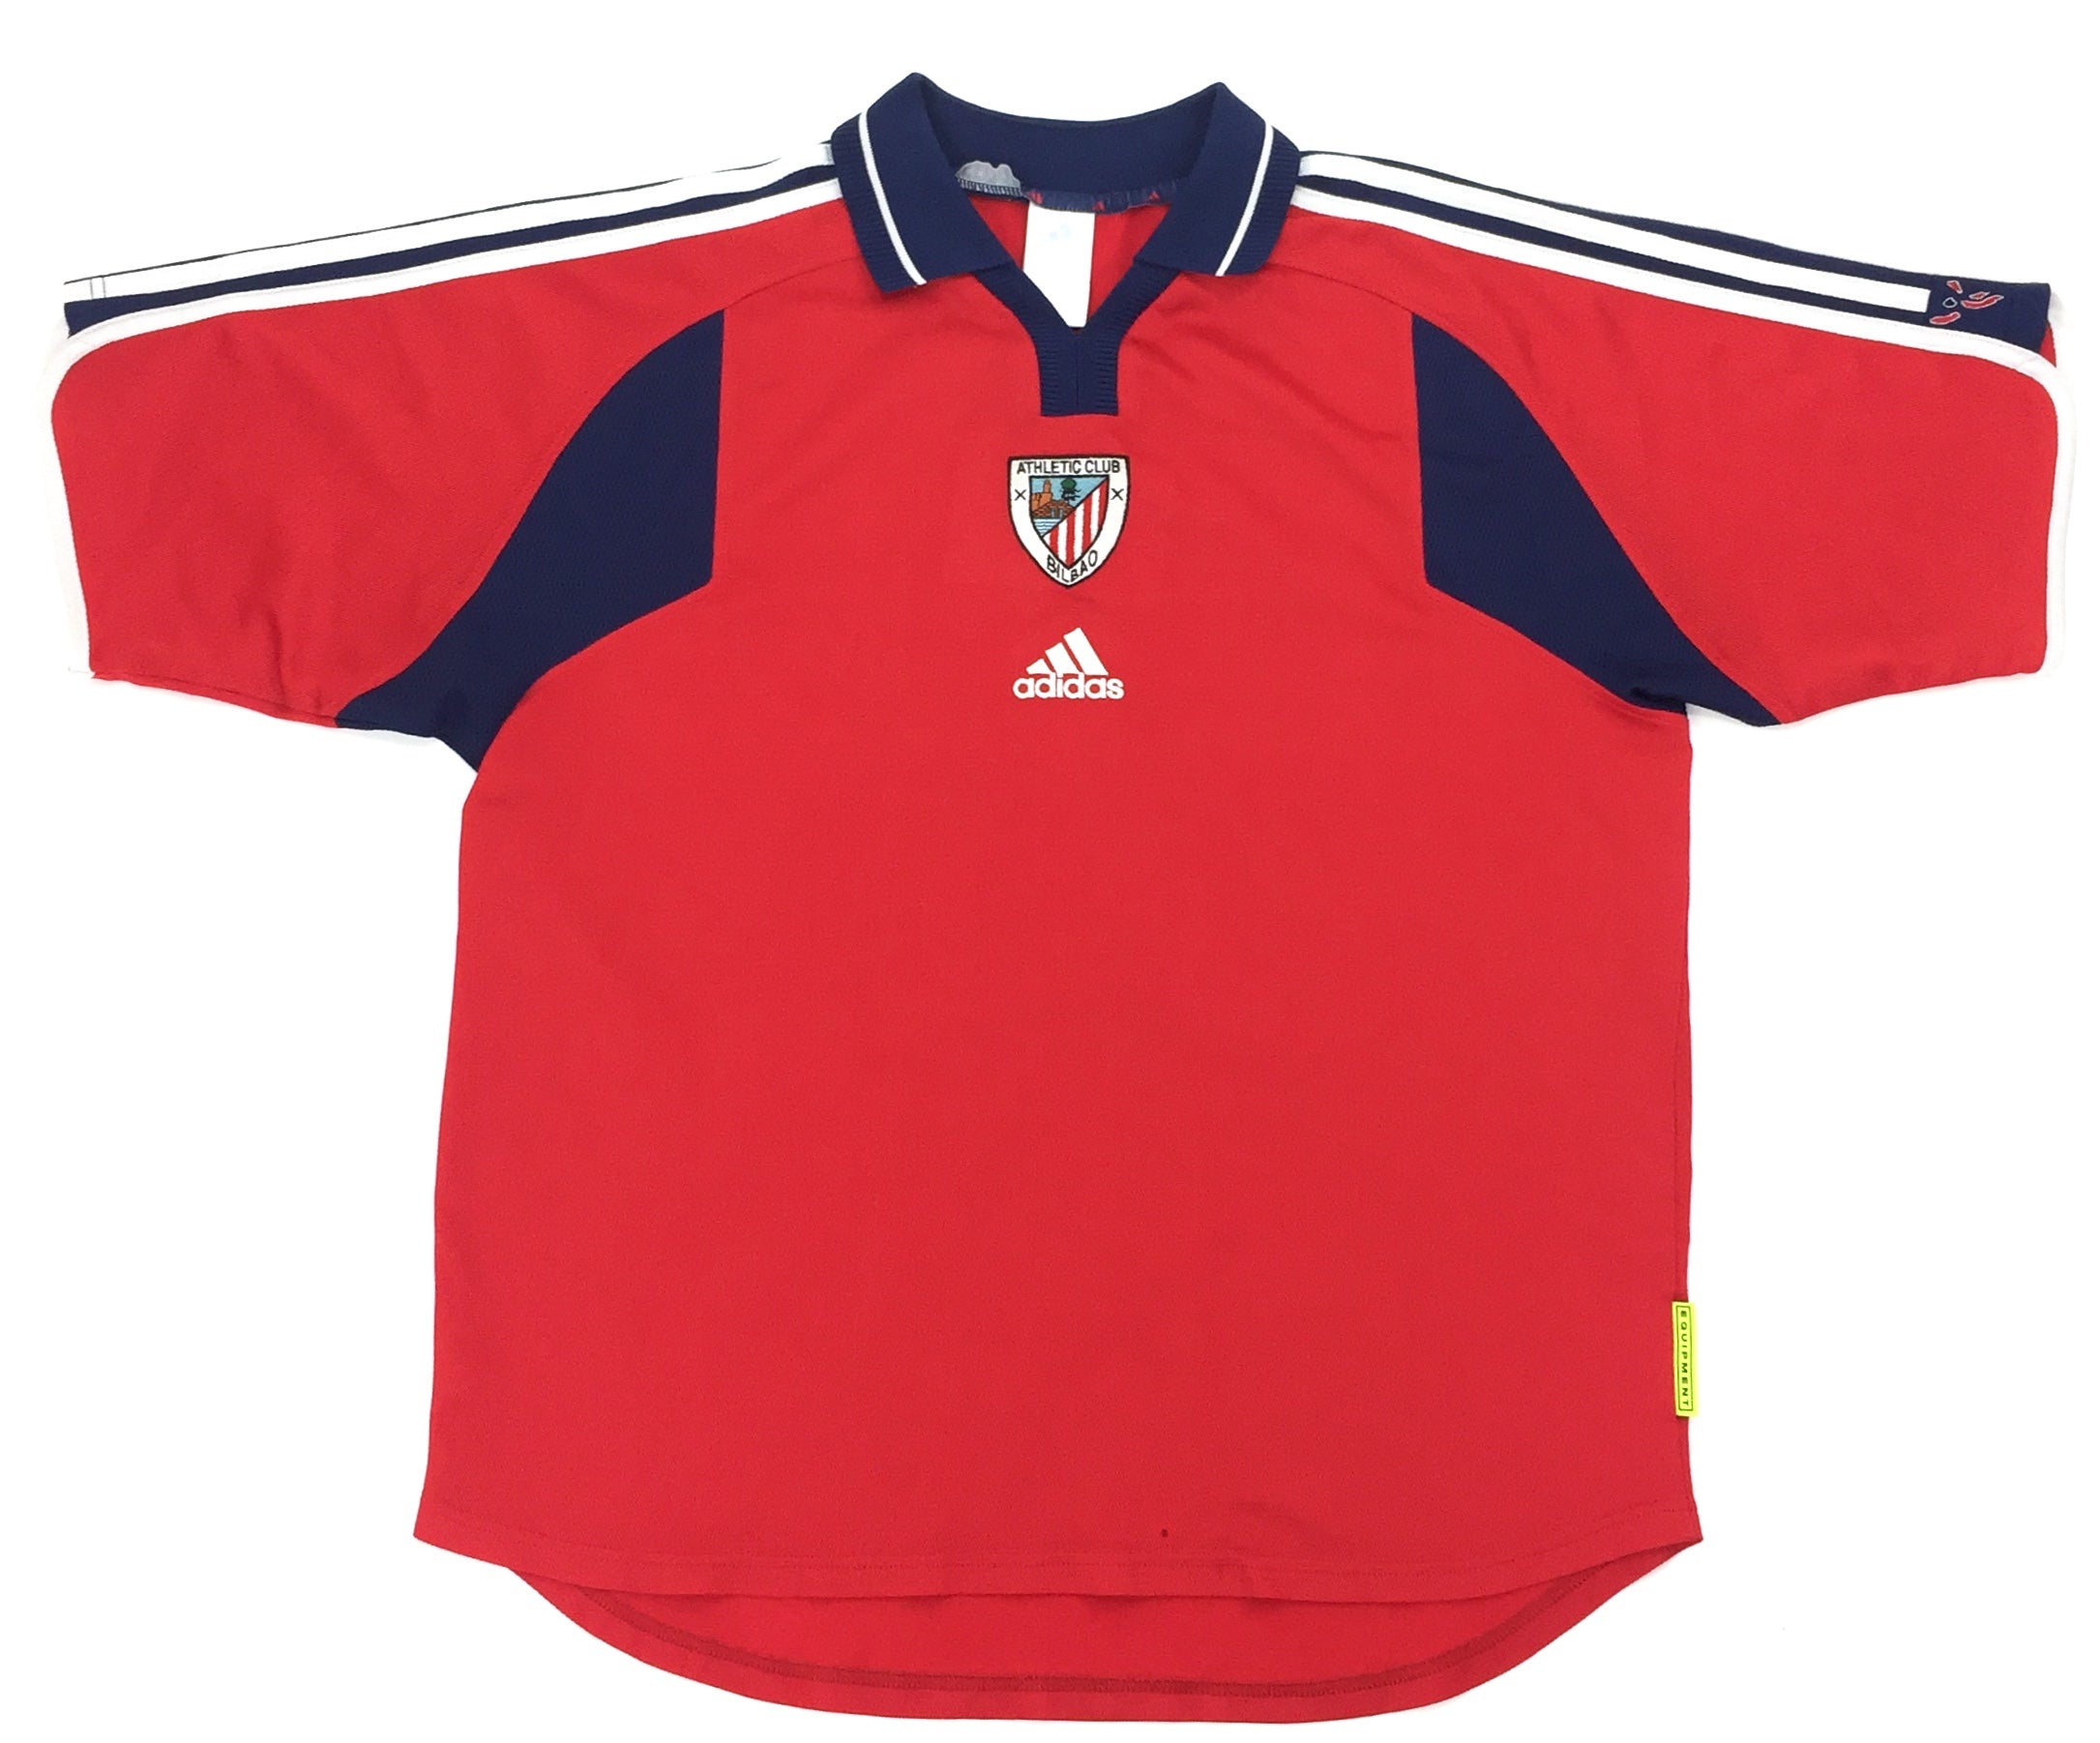 Se infla Espinas toque 0500 Vintage Adidas Atletico Bilbao 2000/2001 Soccer Jersey – PAUL'S FANSHOP